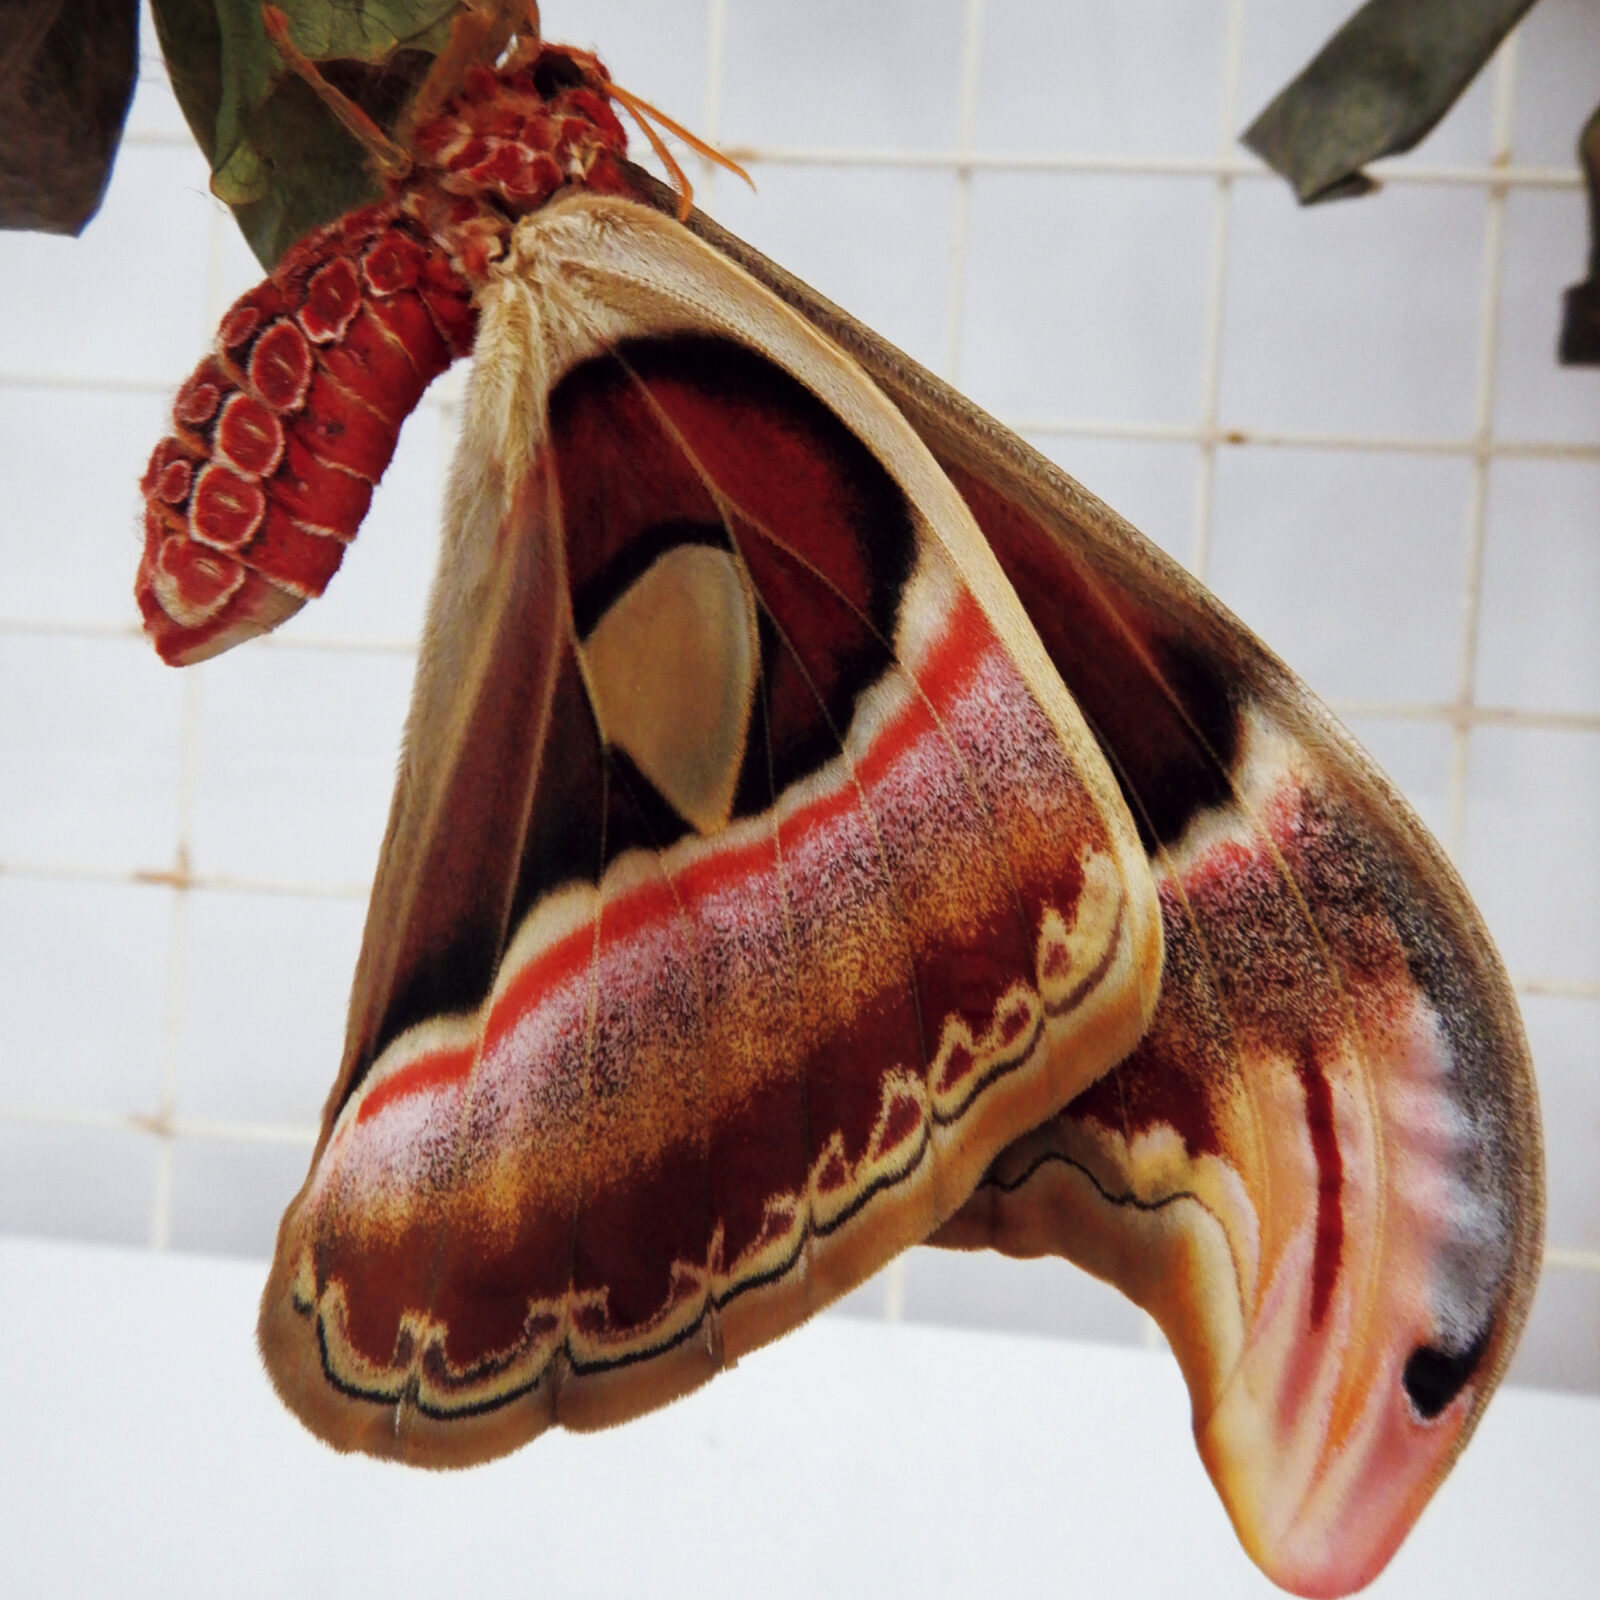 舌を出した蛇の横顔に見える、蝶の擬態